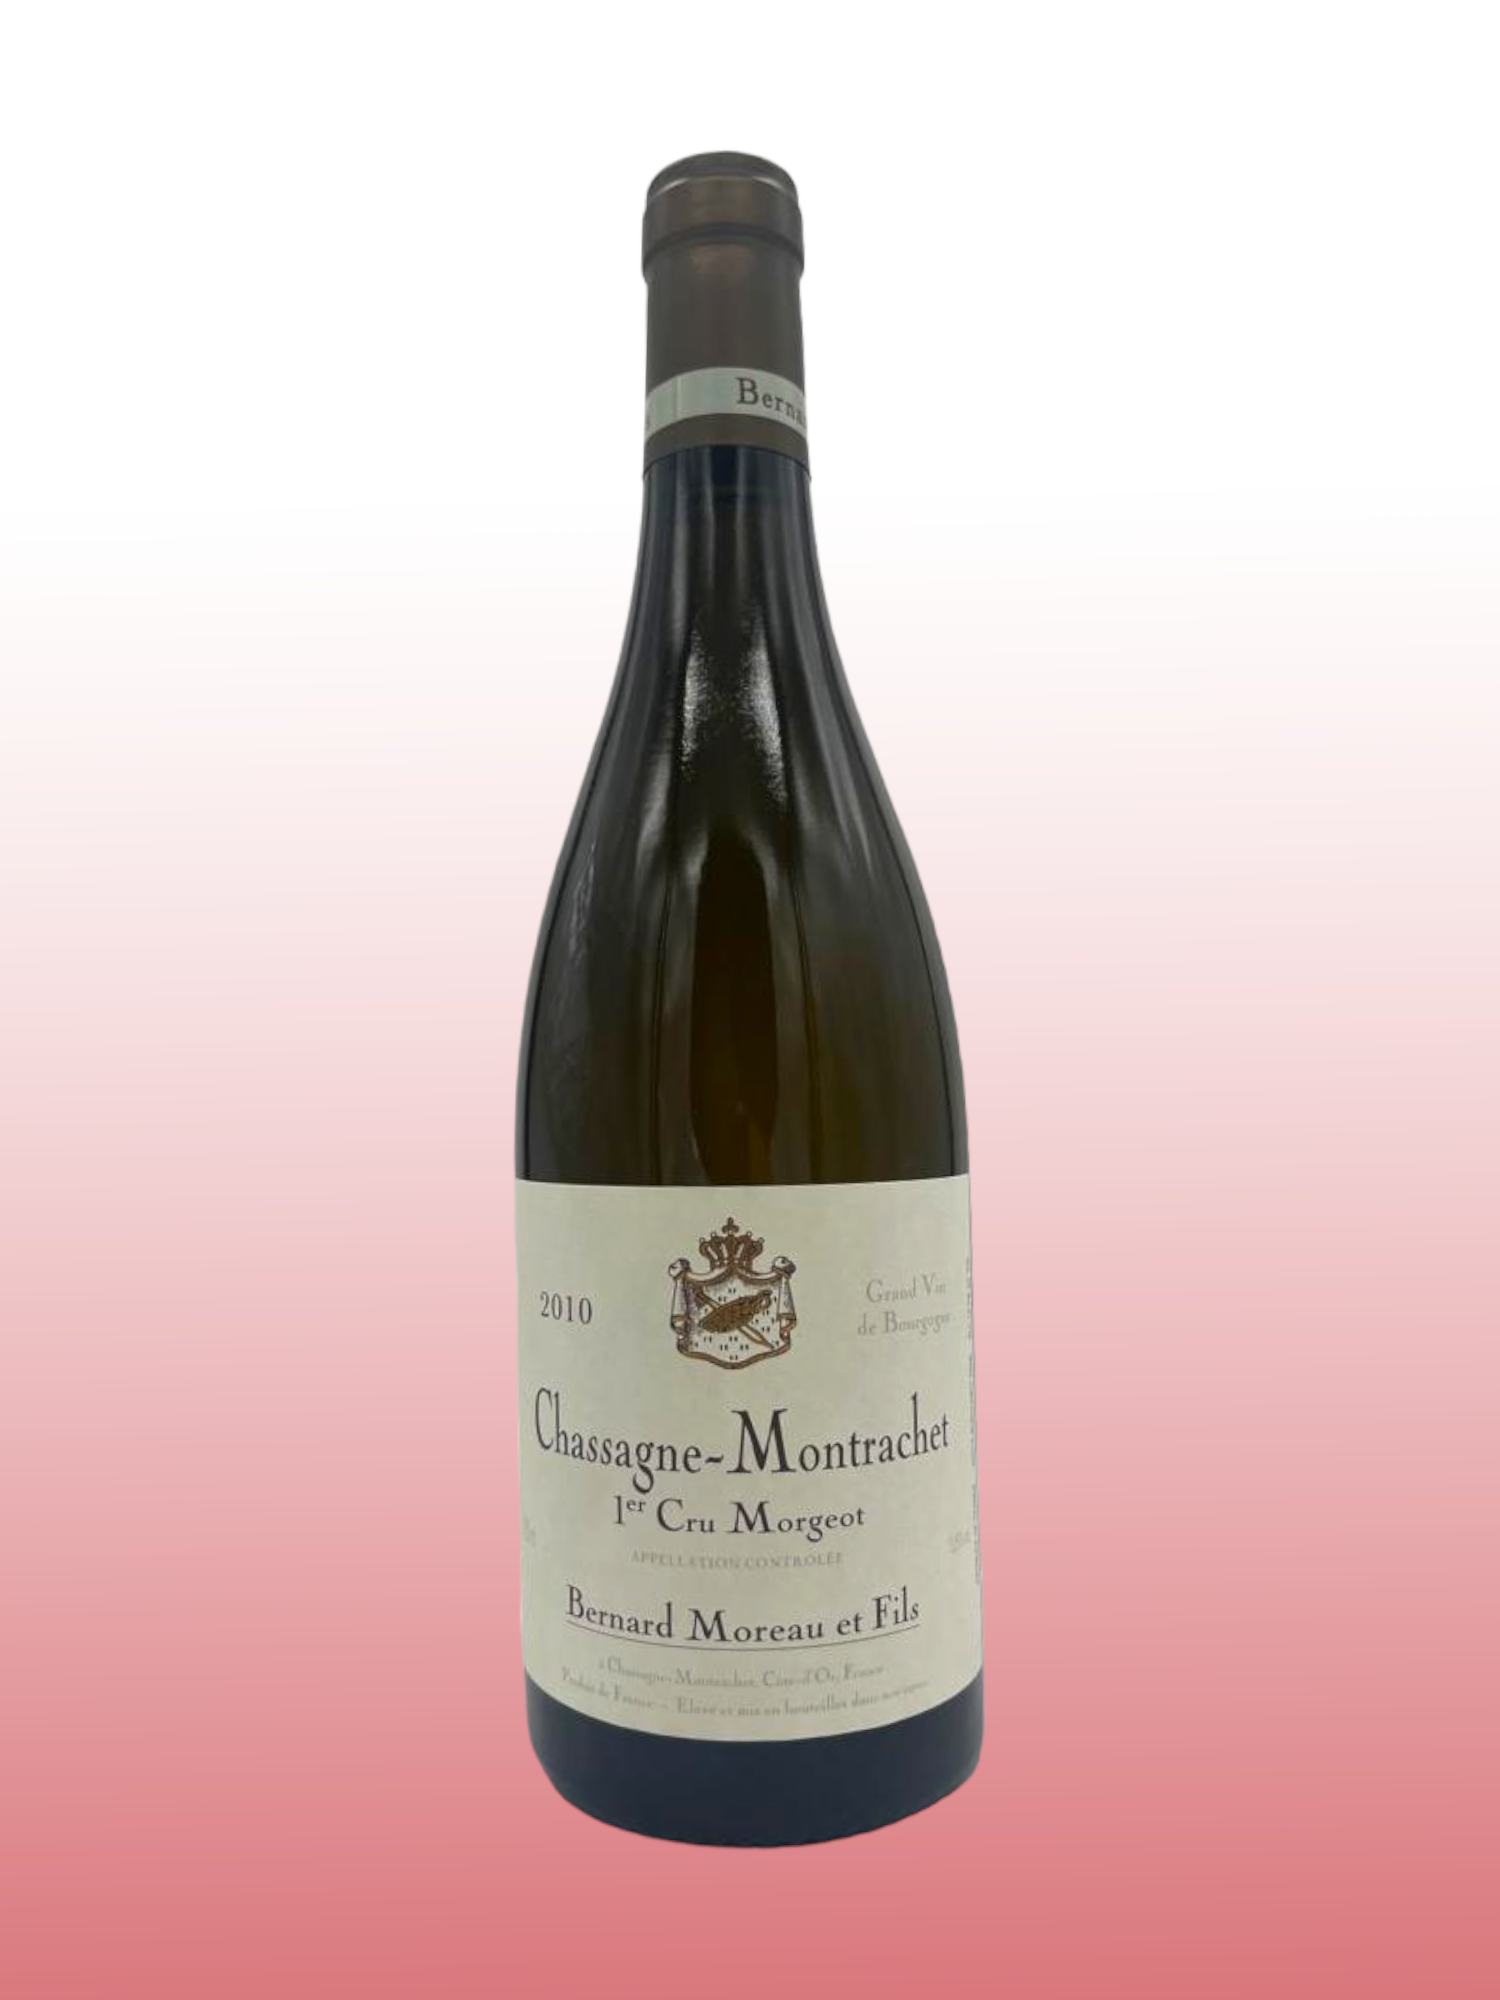 2010 Chassagne-Montrachet 1er Cru "Morgeot"